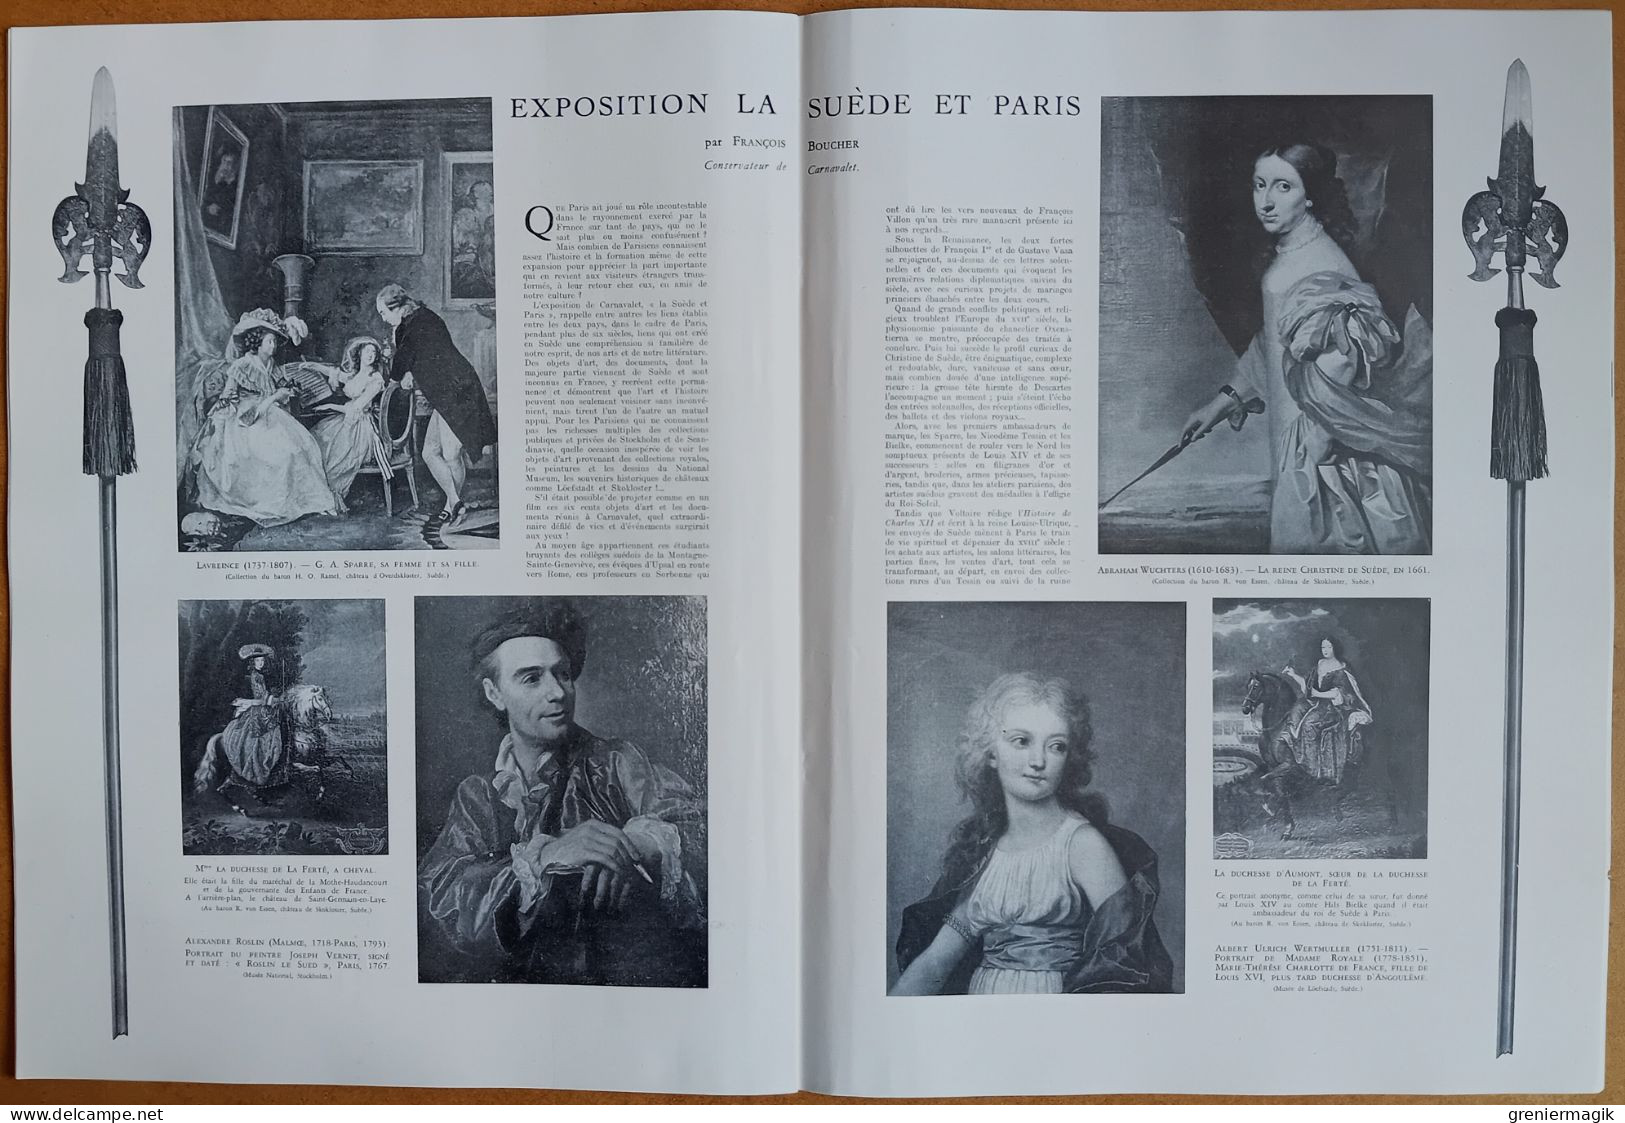 France Illustration N°83 03/05/1947 Auriol en A.O.F./De Gaulle reçoit la presse/Côte d'Azur/Le son sur film/Christian X